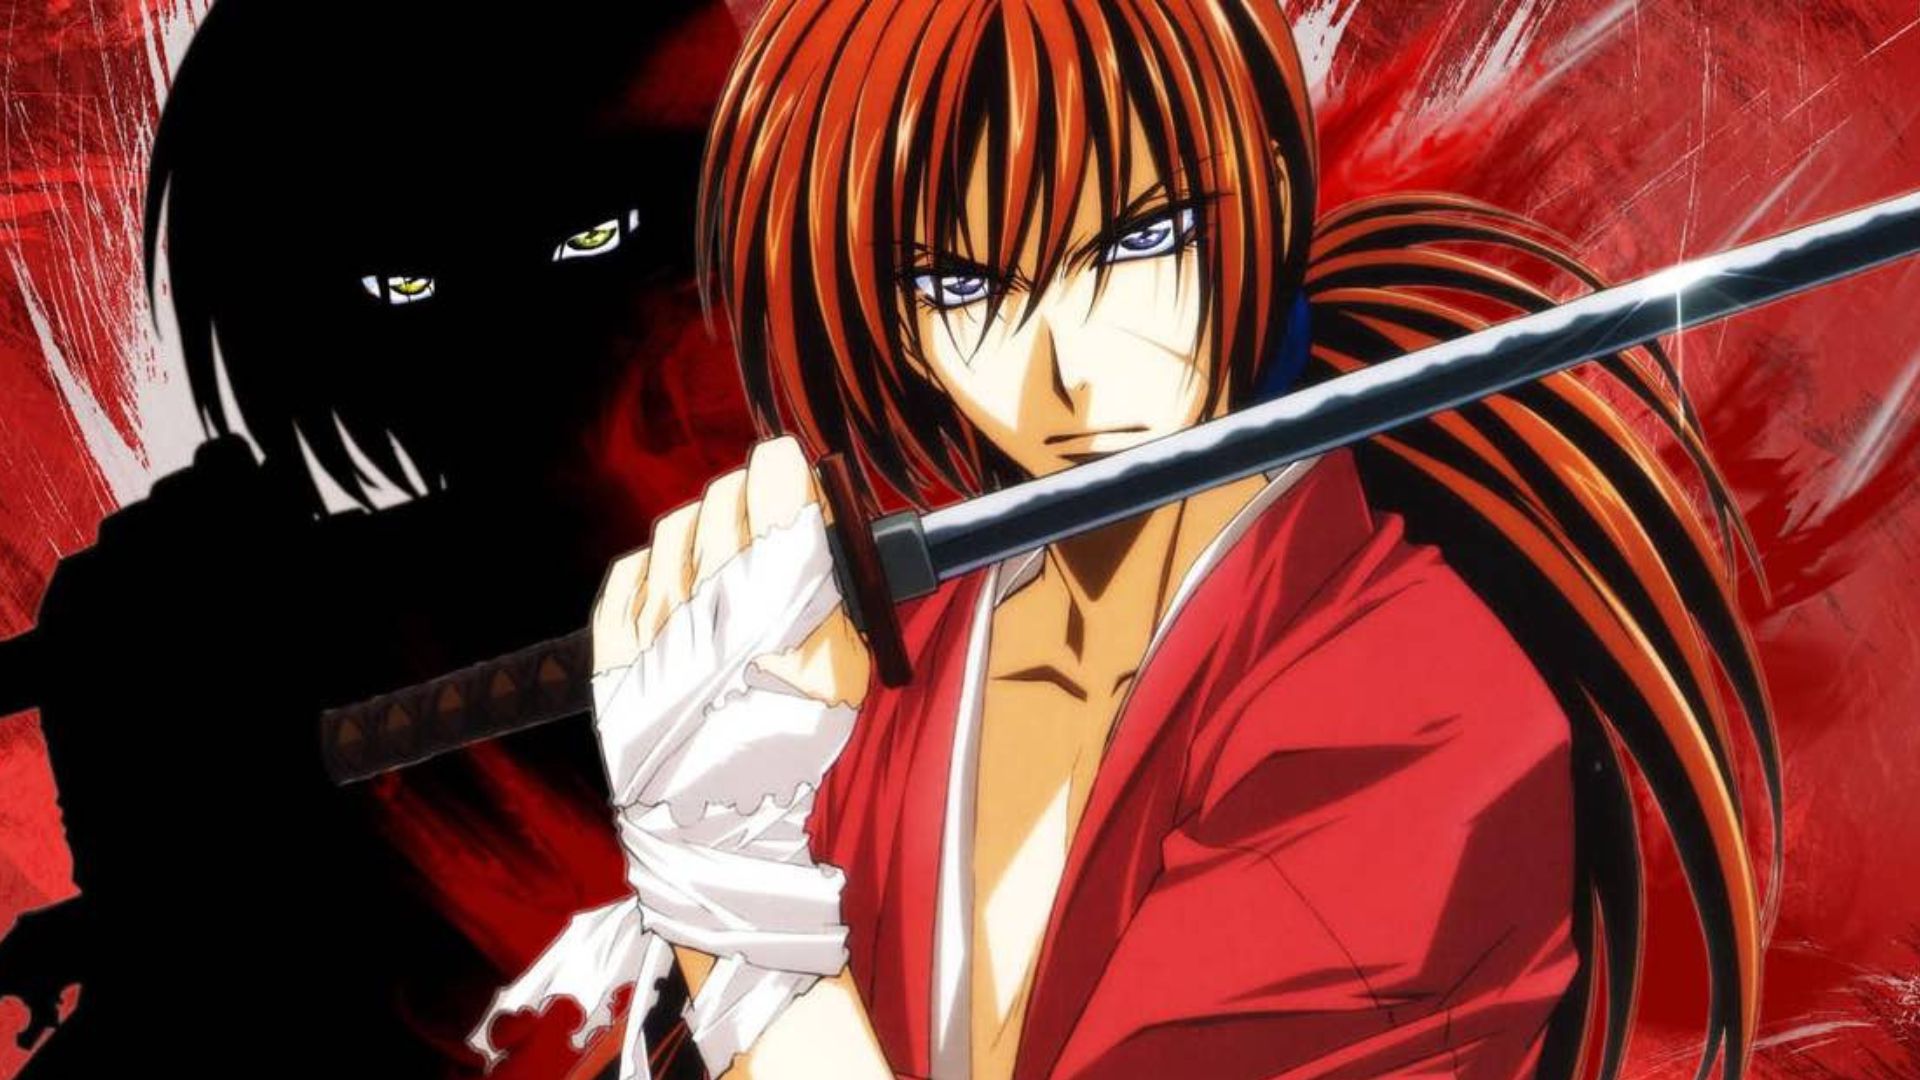 Samurai X: A Jornada de Redenção de Kenshin Himura na Era Meiji